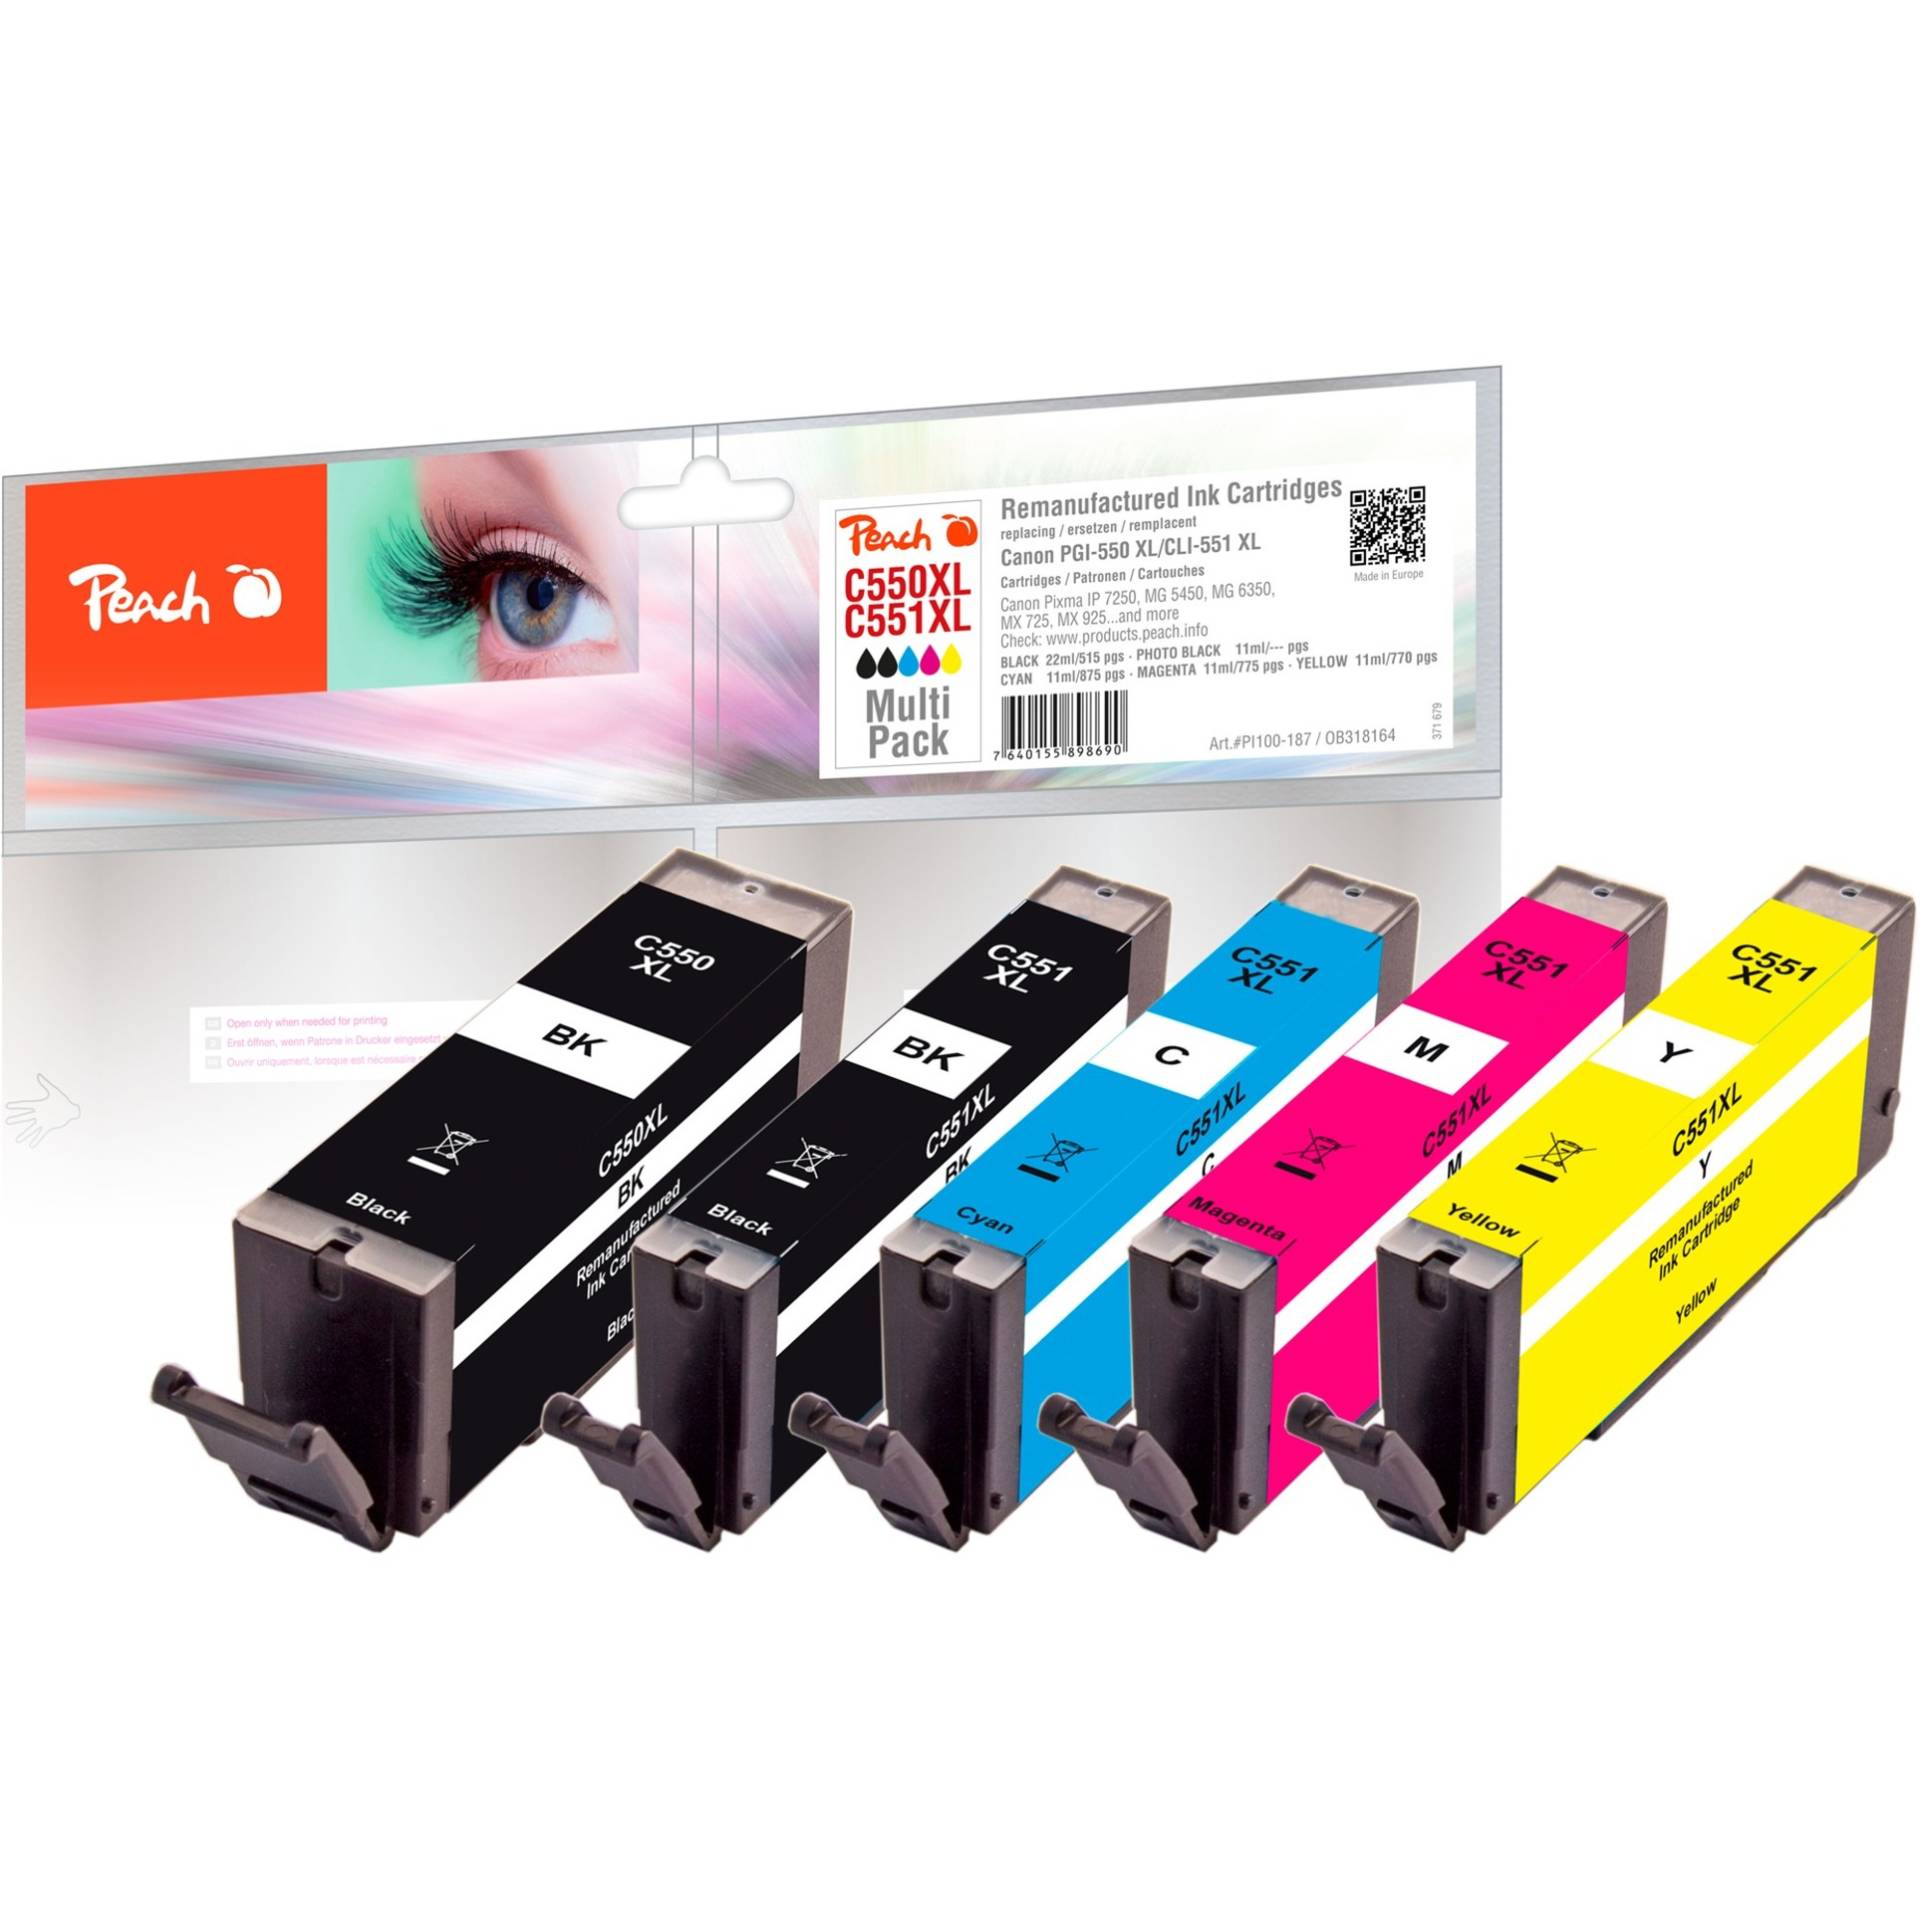 Tinte Spar Pack Plus PI100-187 von Peach